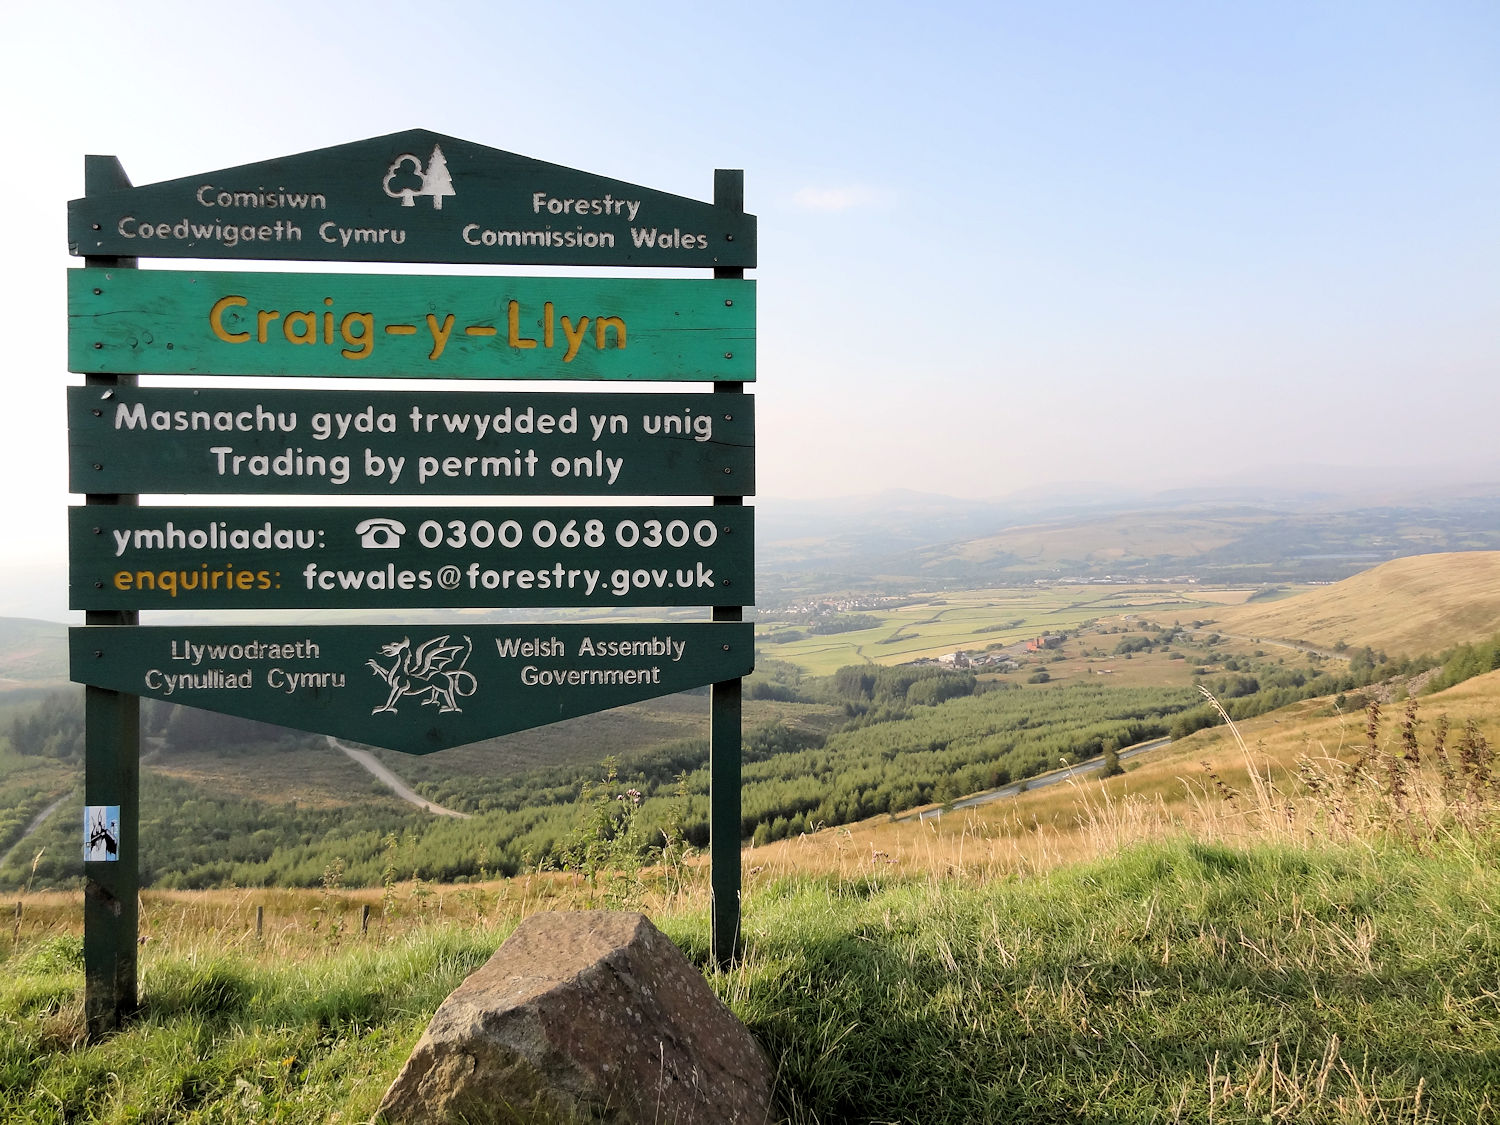 Information sign near the summit of Craig-y-Llyn